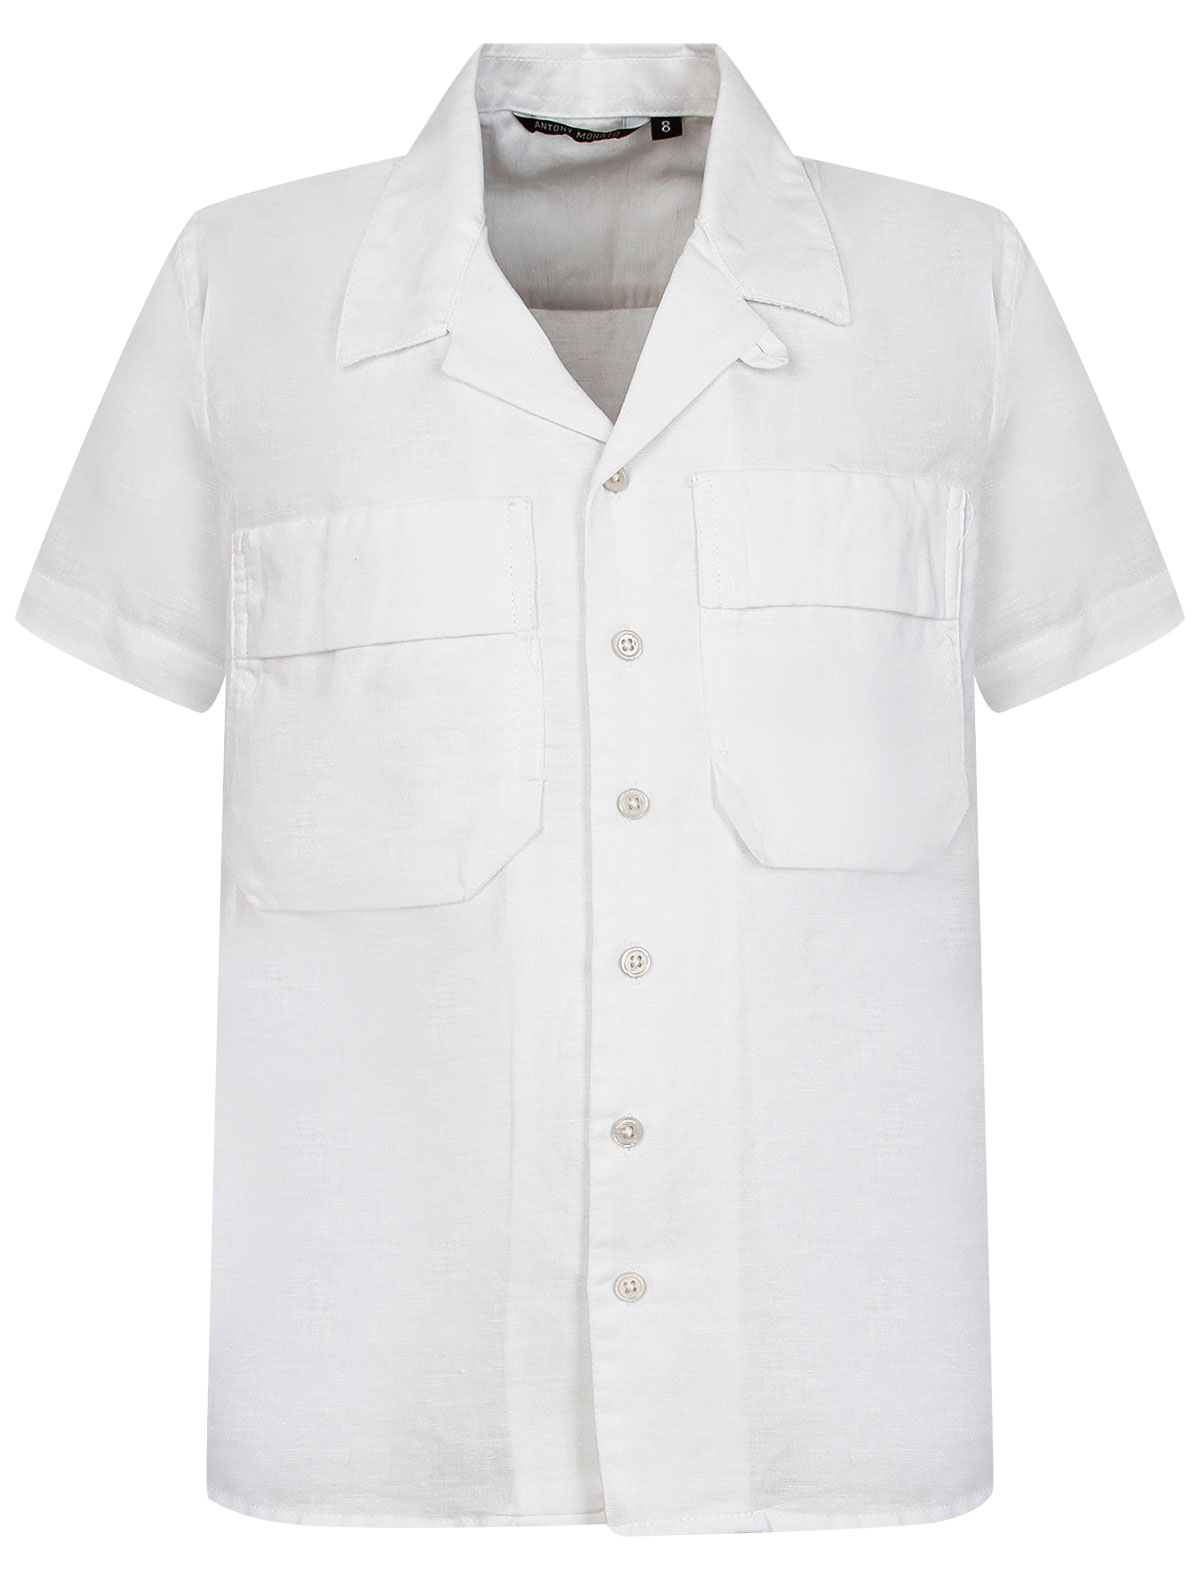 Рубашка Antony Morato белого цвета